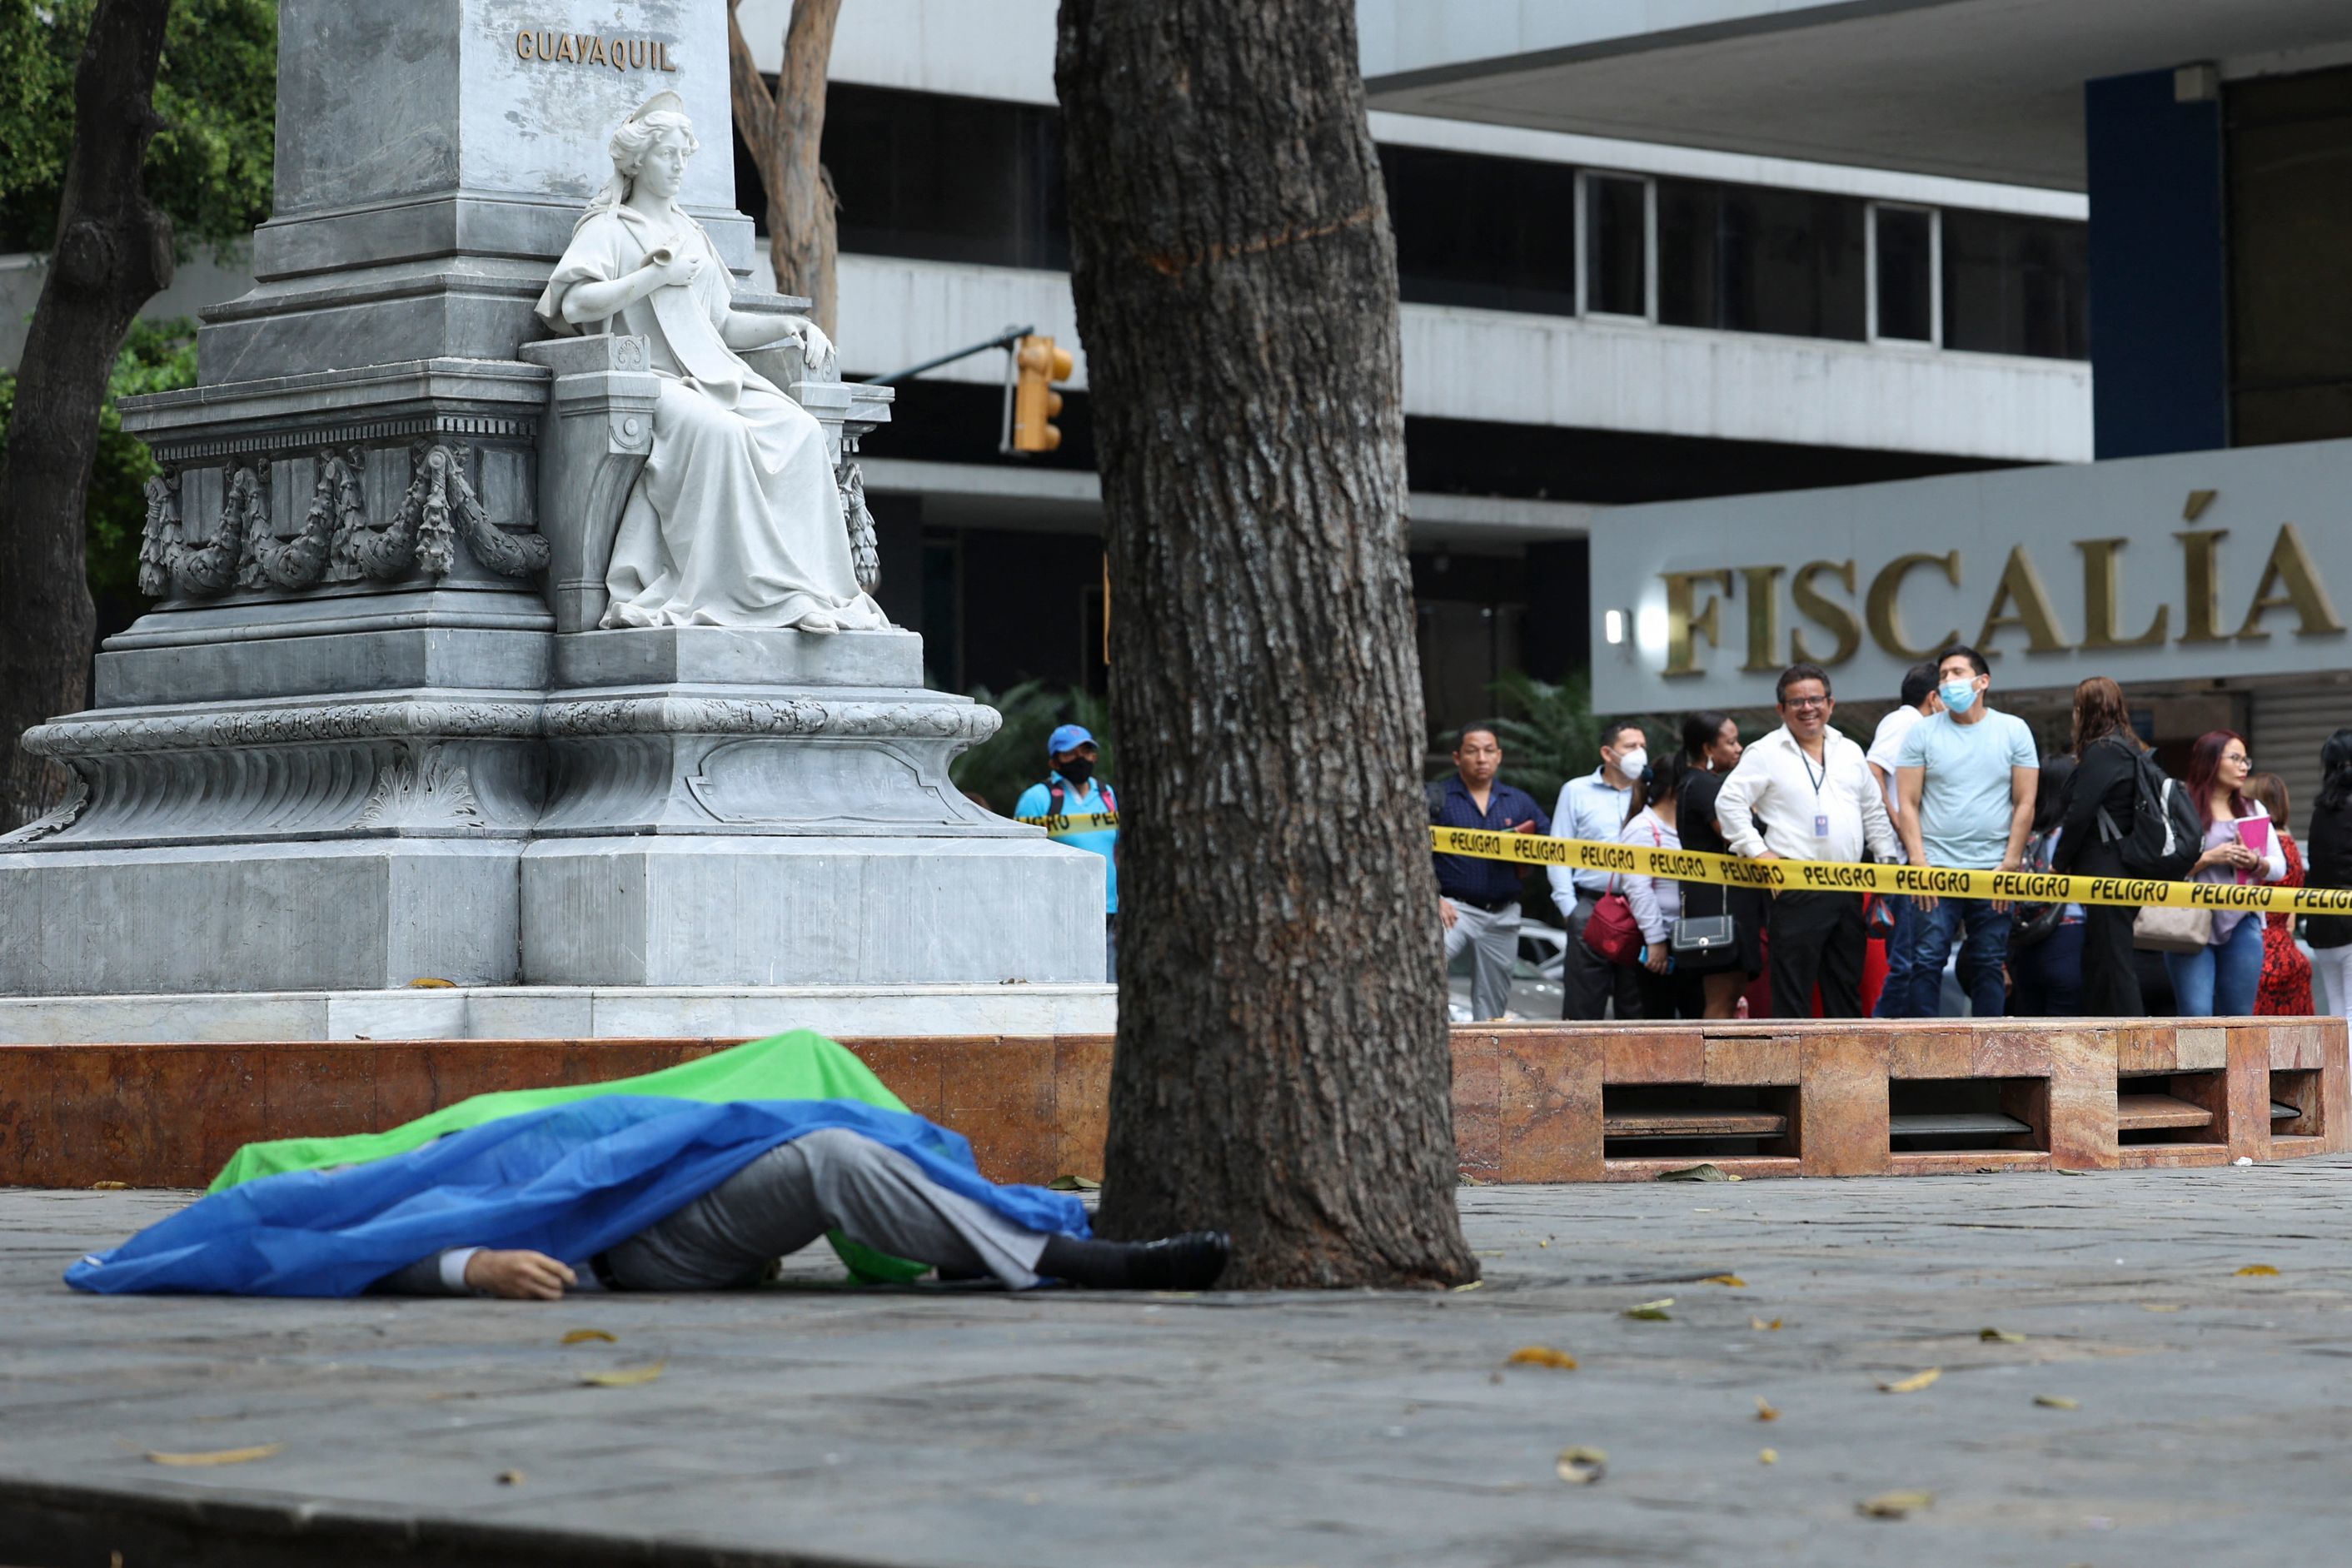 El cadáver cubierto del fiscal ecuatoriano Edgar Escobar yace frente a la fiscalía en Guayaquil, Ecuador, el 19 de septiembre de 2022. - Un fiscal que investigaba los crímenes de odio y el feminicidio fue asesinado este lunes en las afueras de la Fiscalía ecuatoriana en Guayaquil, informó el organismo gubernamental.